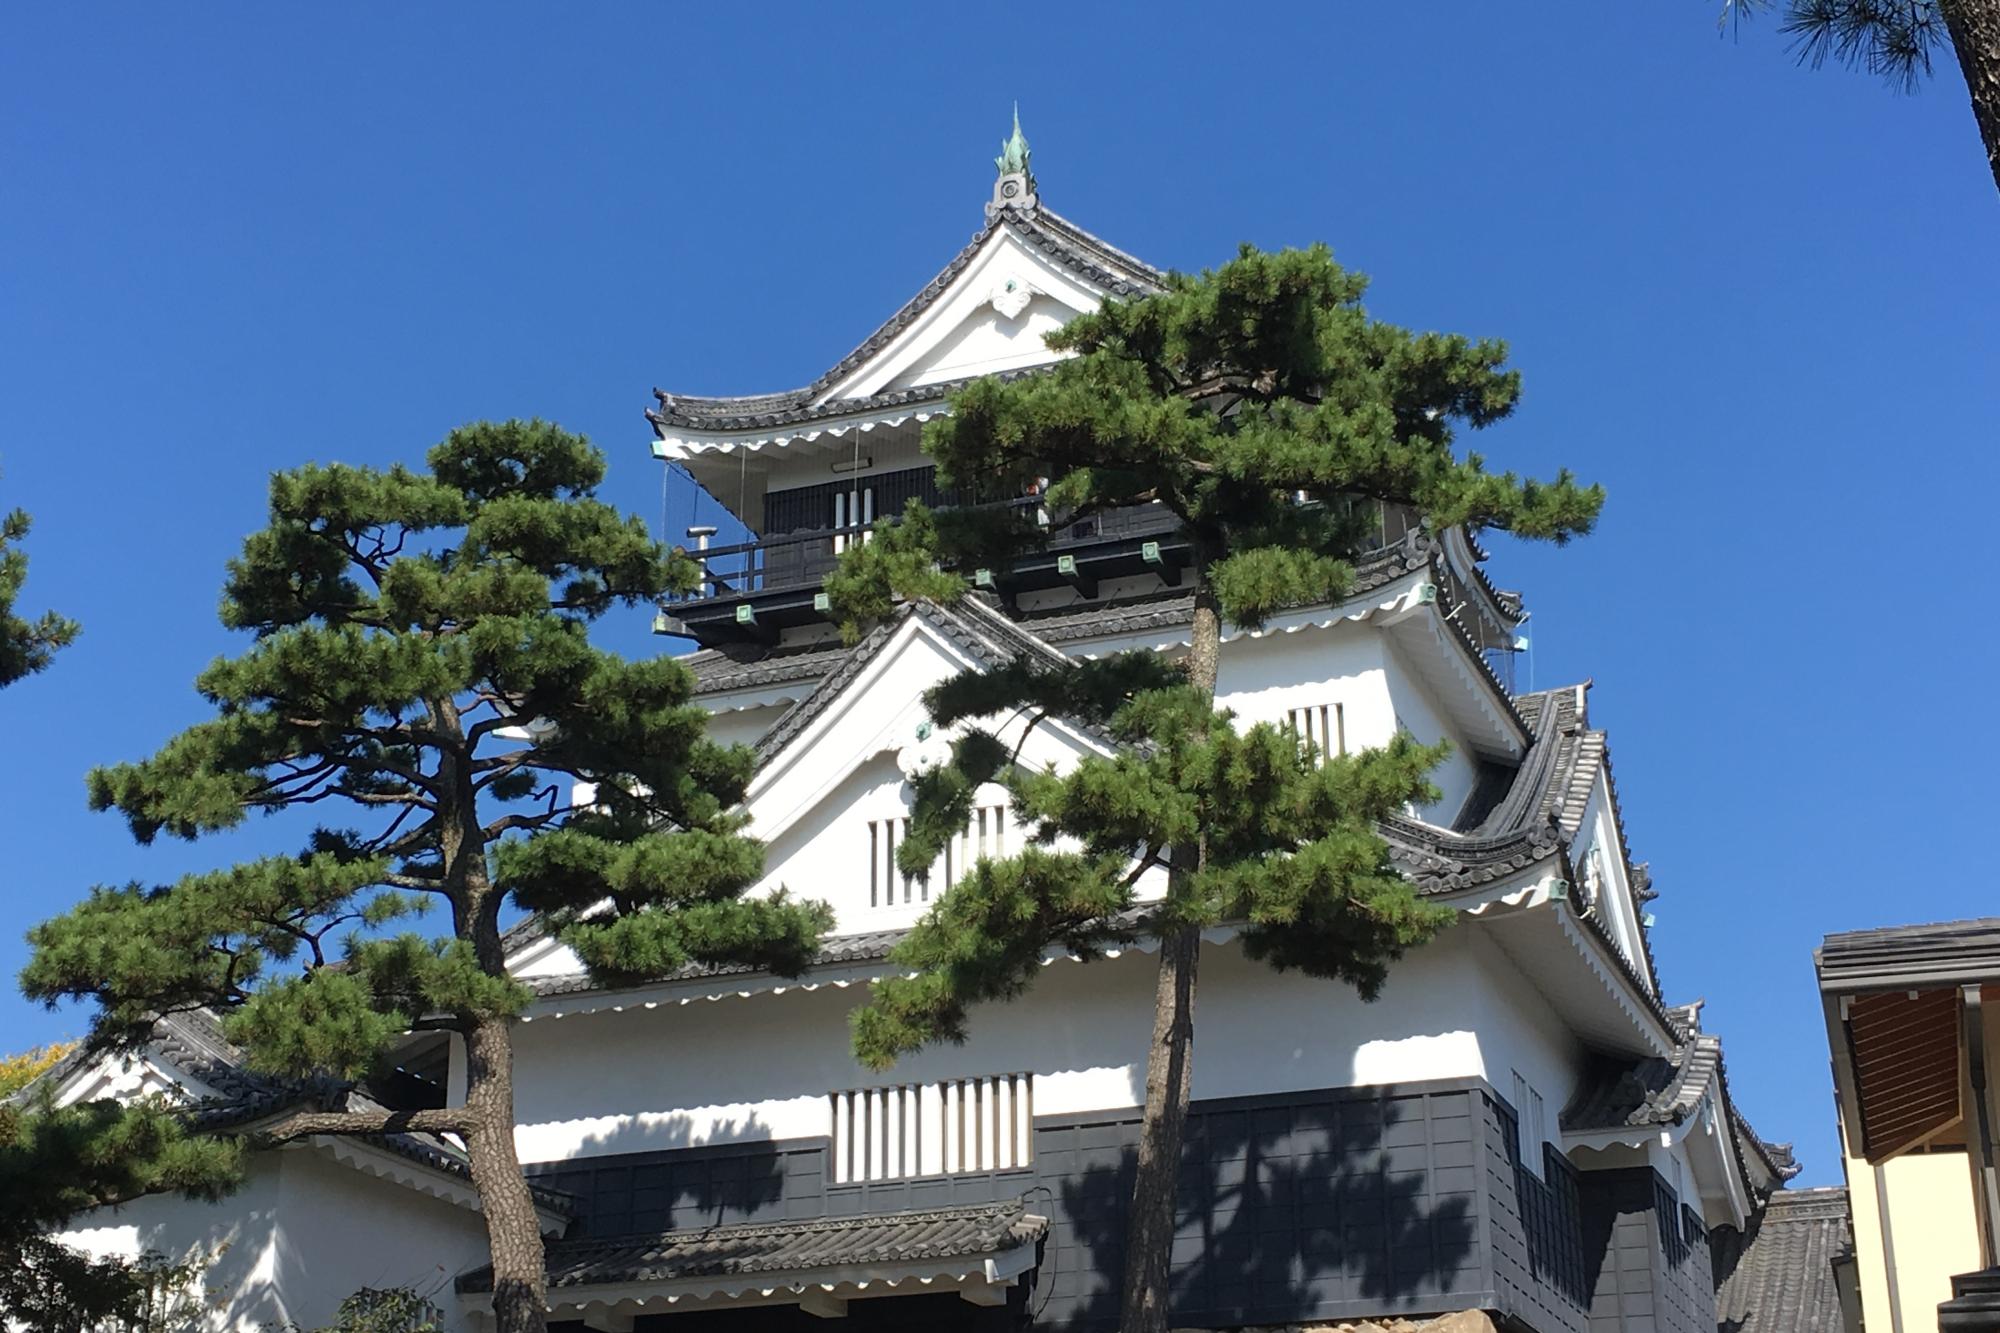 緊急事態宣言に伴う岡崎城をはじめとした園内施設の休館についてのお知らせ。 